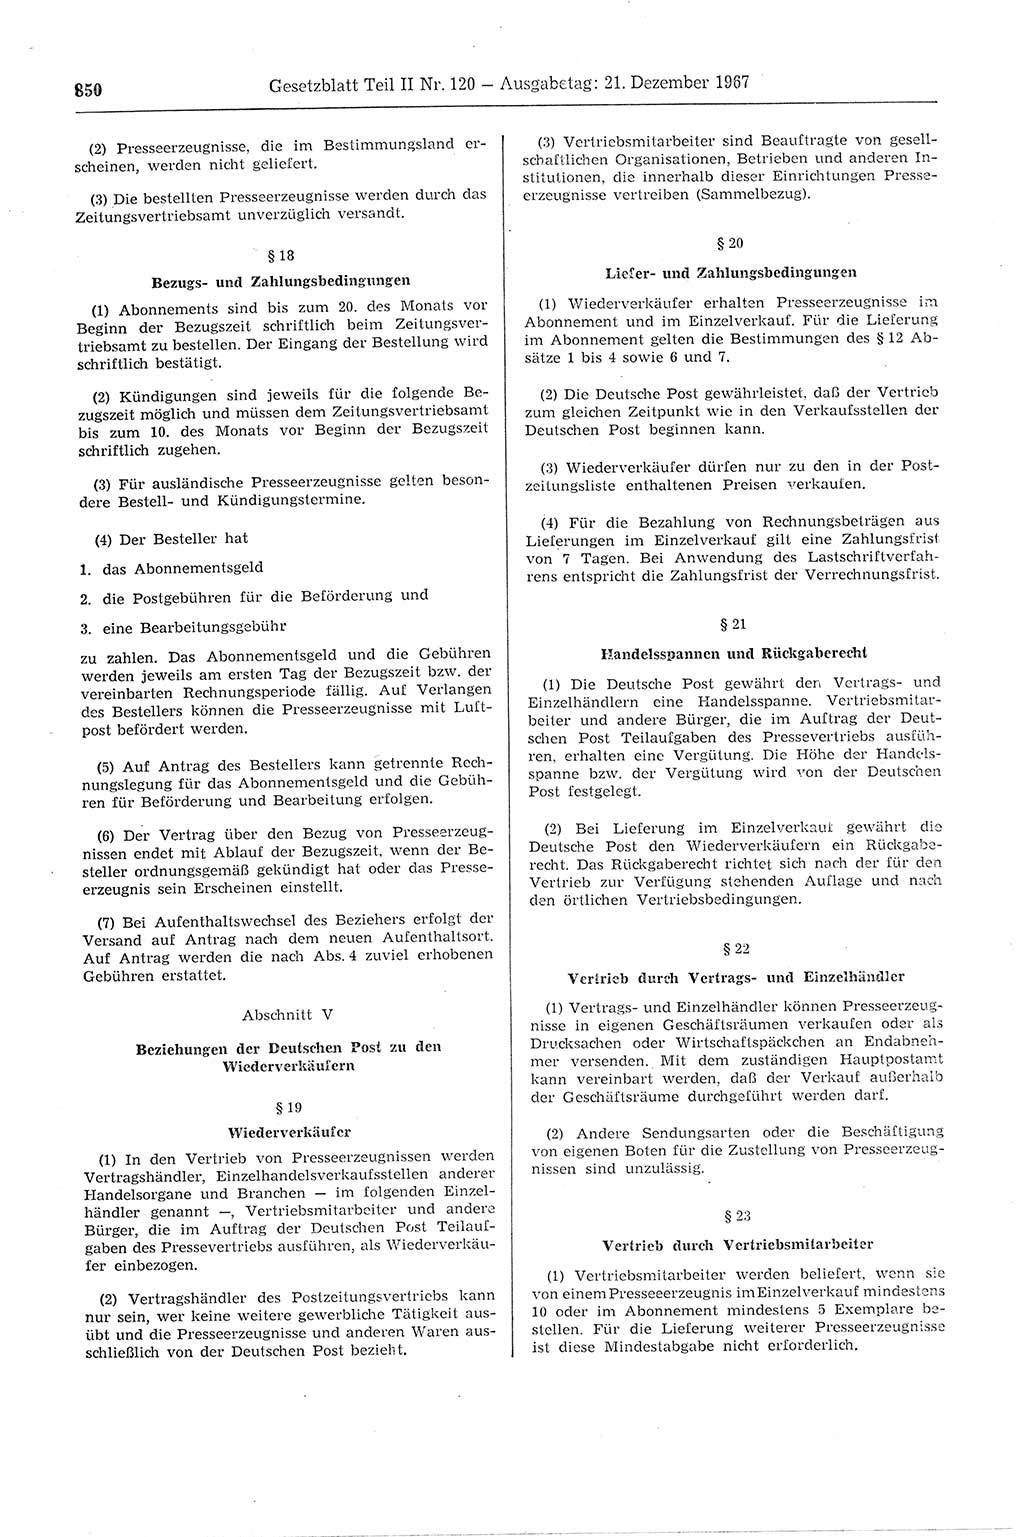 Gesetzblatt (GBl.) der Deutschen Demokratischen Republik (DDR) Teil ⅠⅠ 1967, Seite 850 (GBl. DDR ⅠⅠ 1967, S. 850)